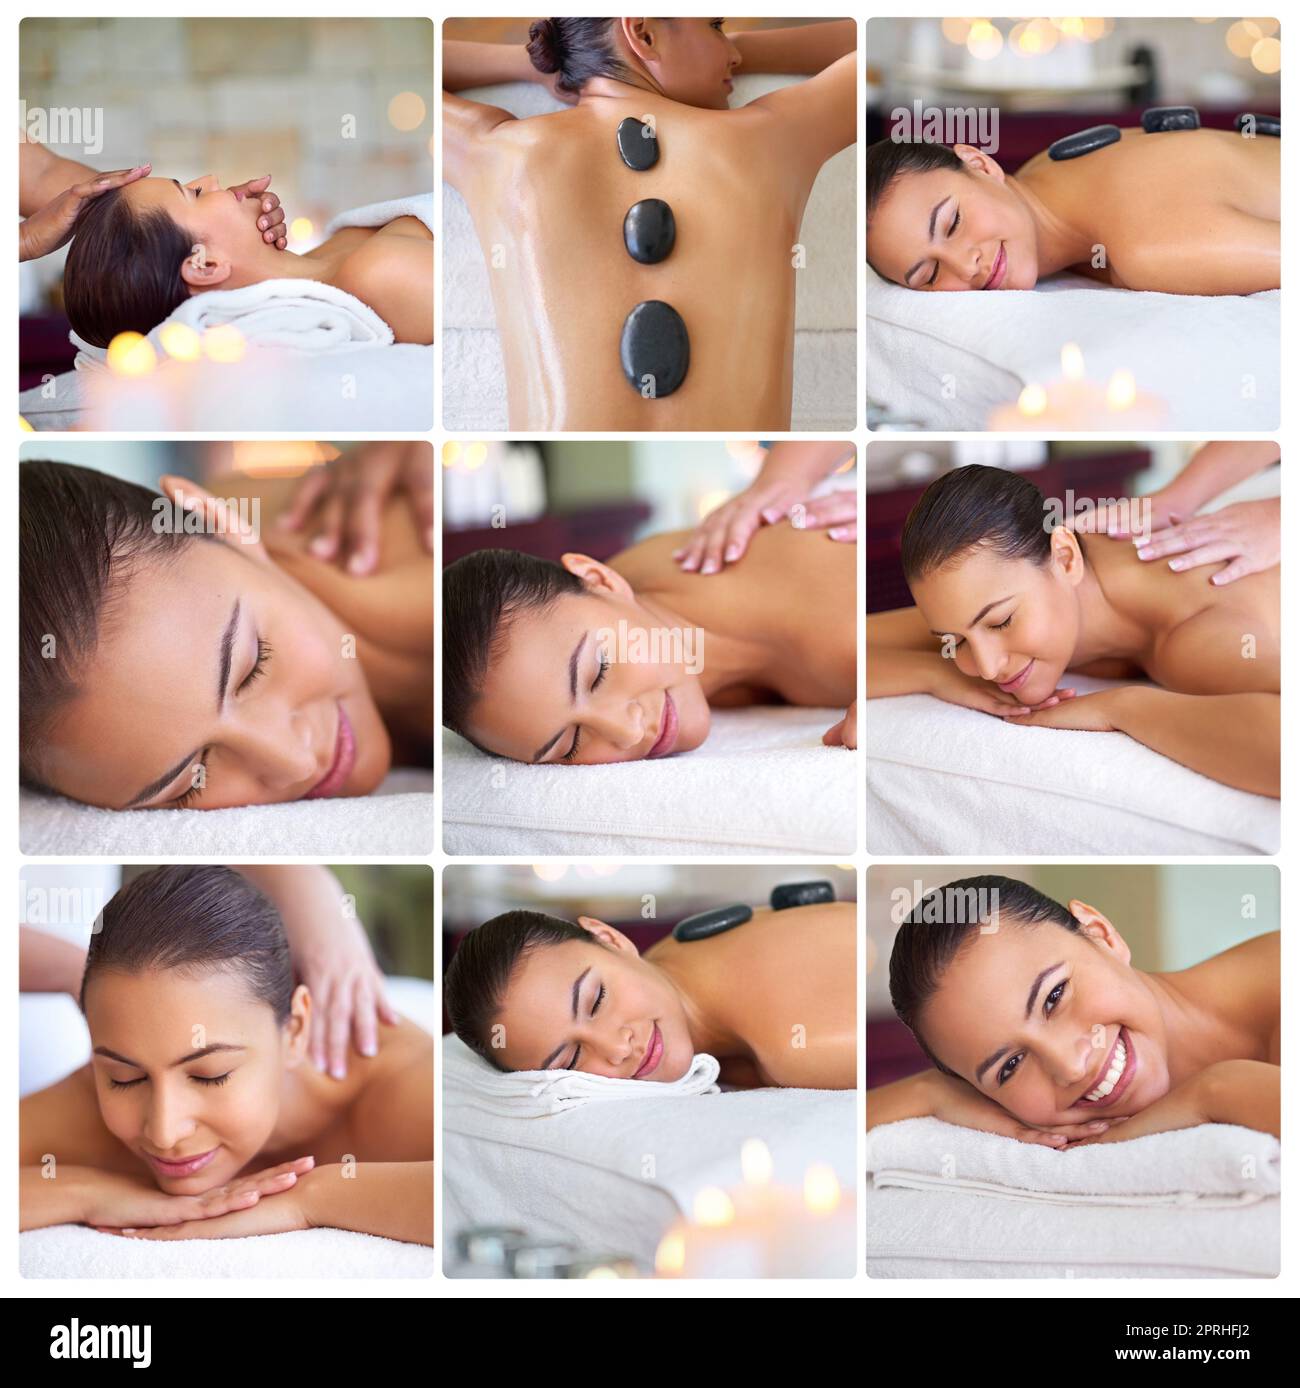 Concedetevi una giornata di tranquillità. Immagine composita di un'attraente giovane donna sdraiata su un lettino da massaggio presso la spa. Foto Stock